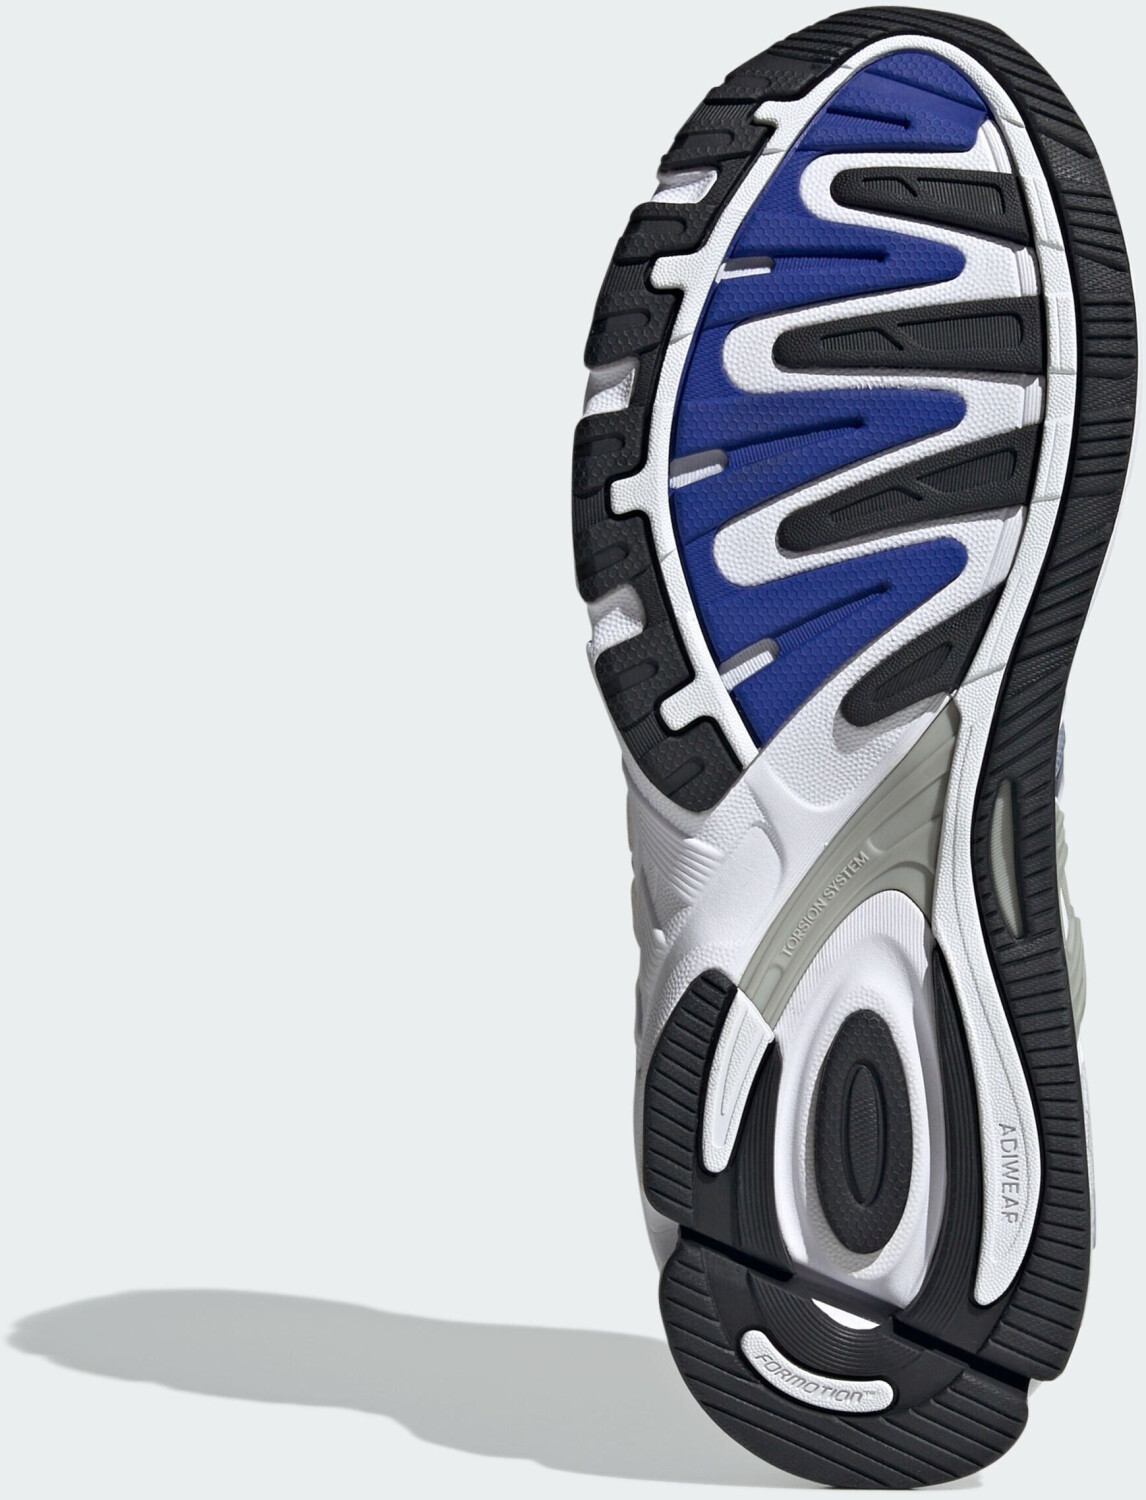 Adidas Response CL cloud white/core black/lucid 84,90 | blue bei € Preisvergleich ab (ID4596)